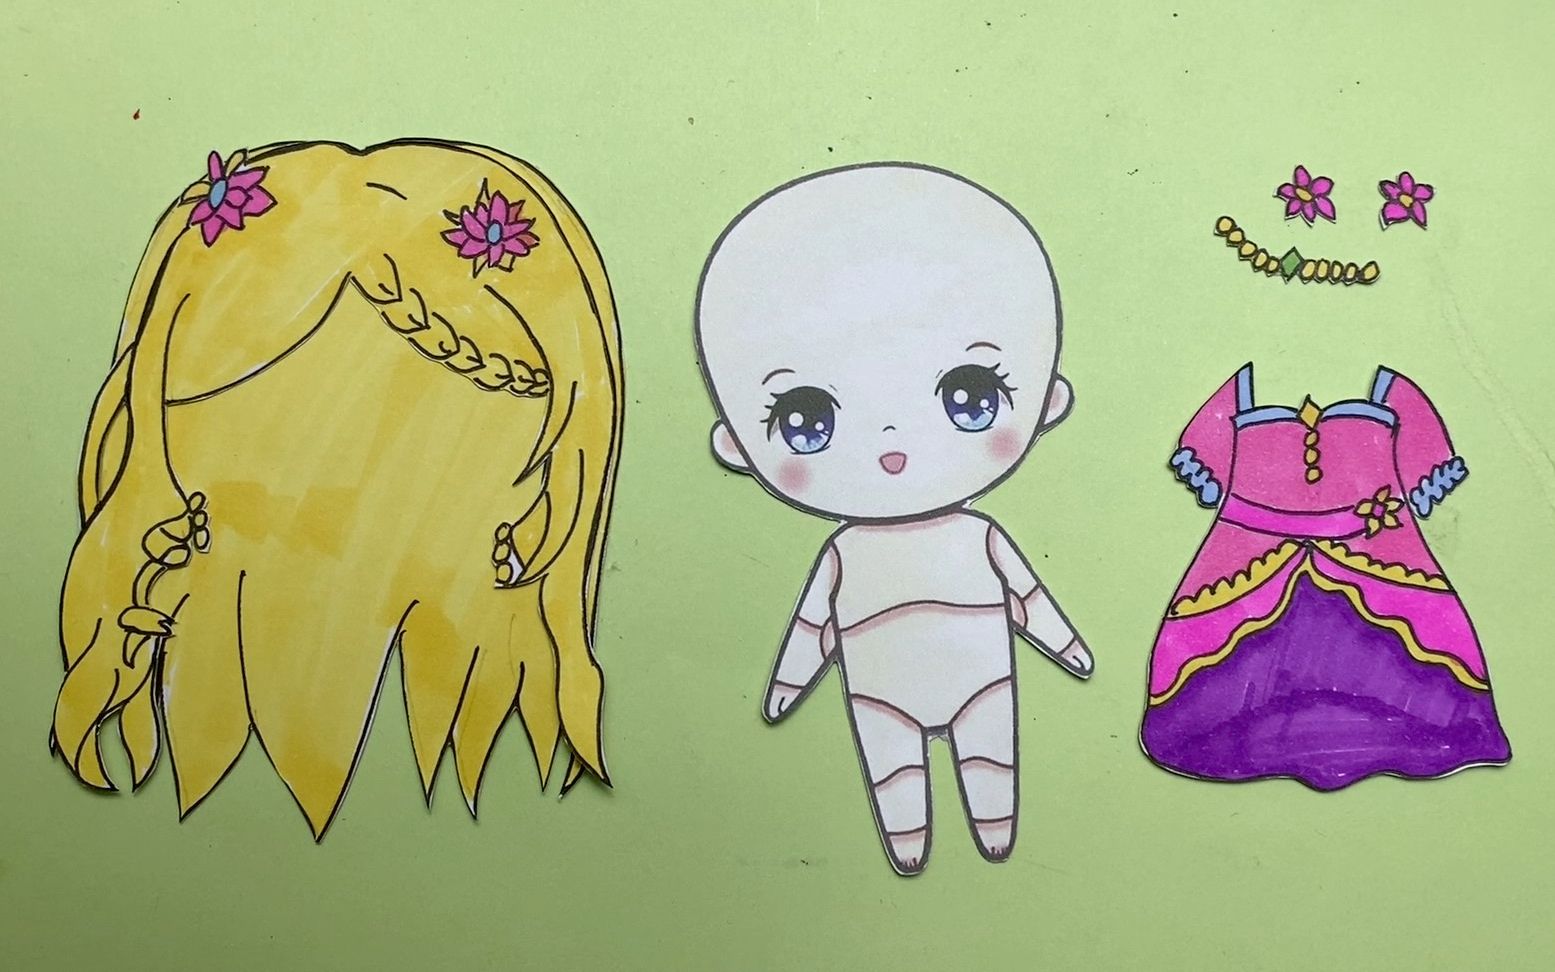 创意手工教程,手绘叶罗丽q版纸娃娃灵公主,真是太可爱了!